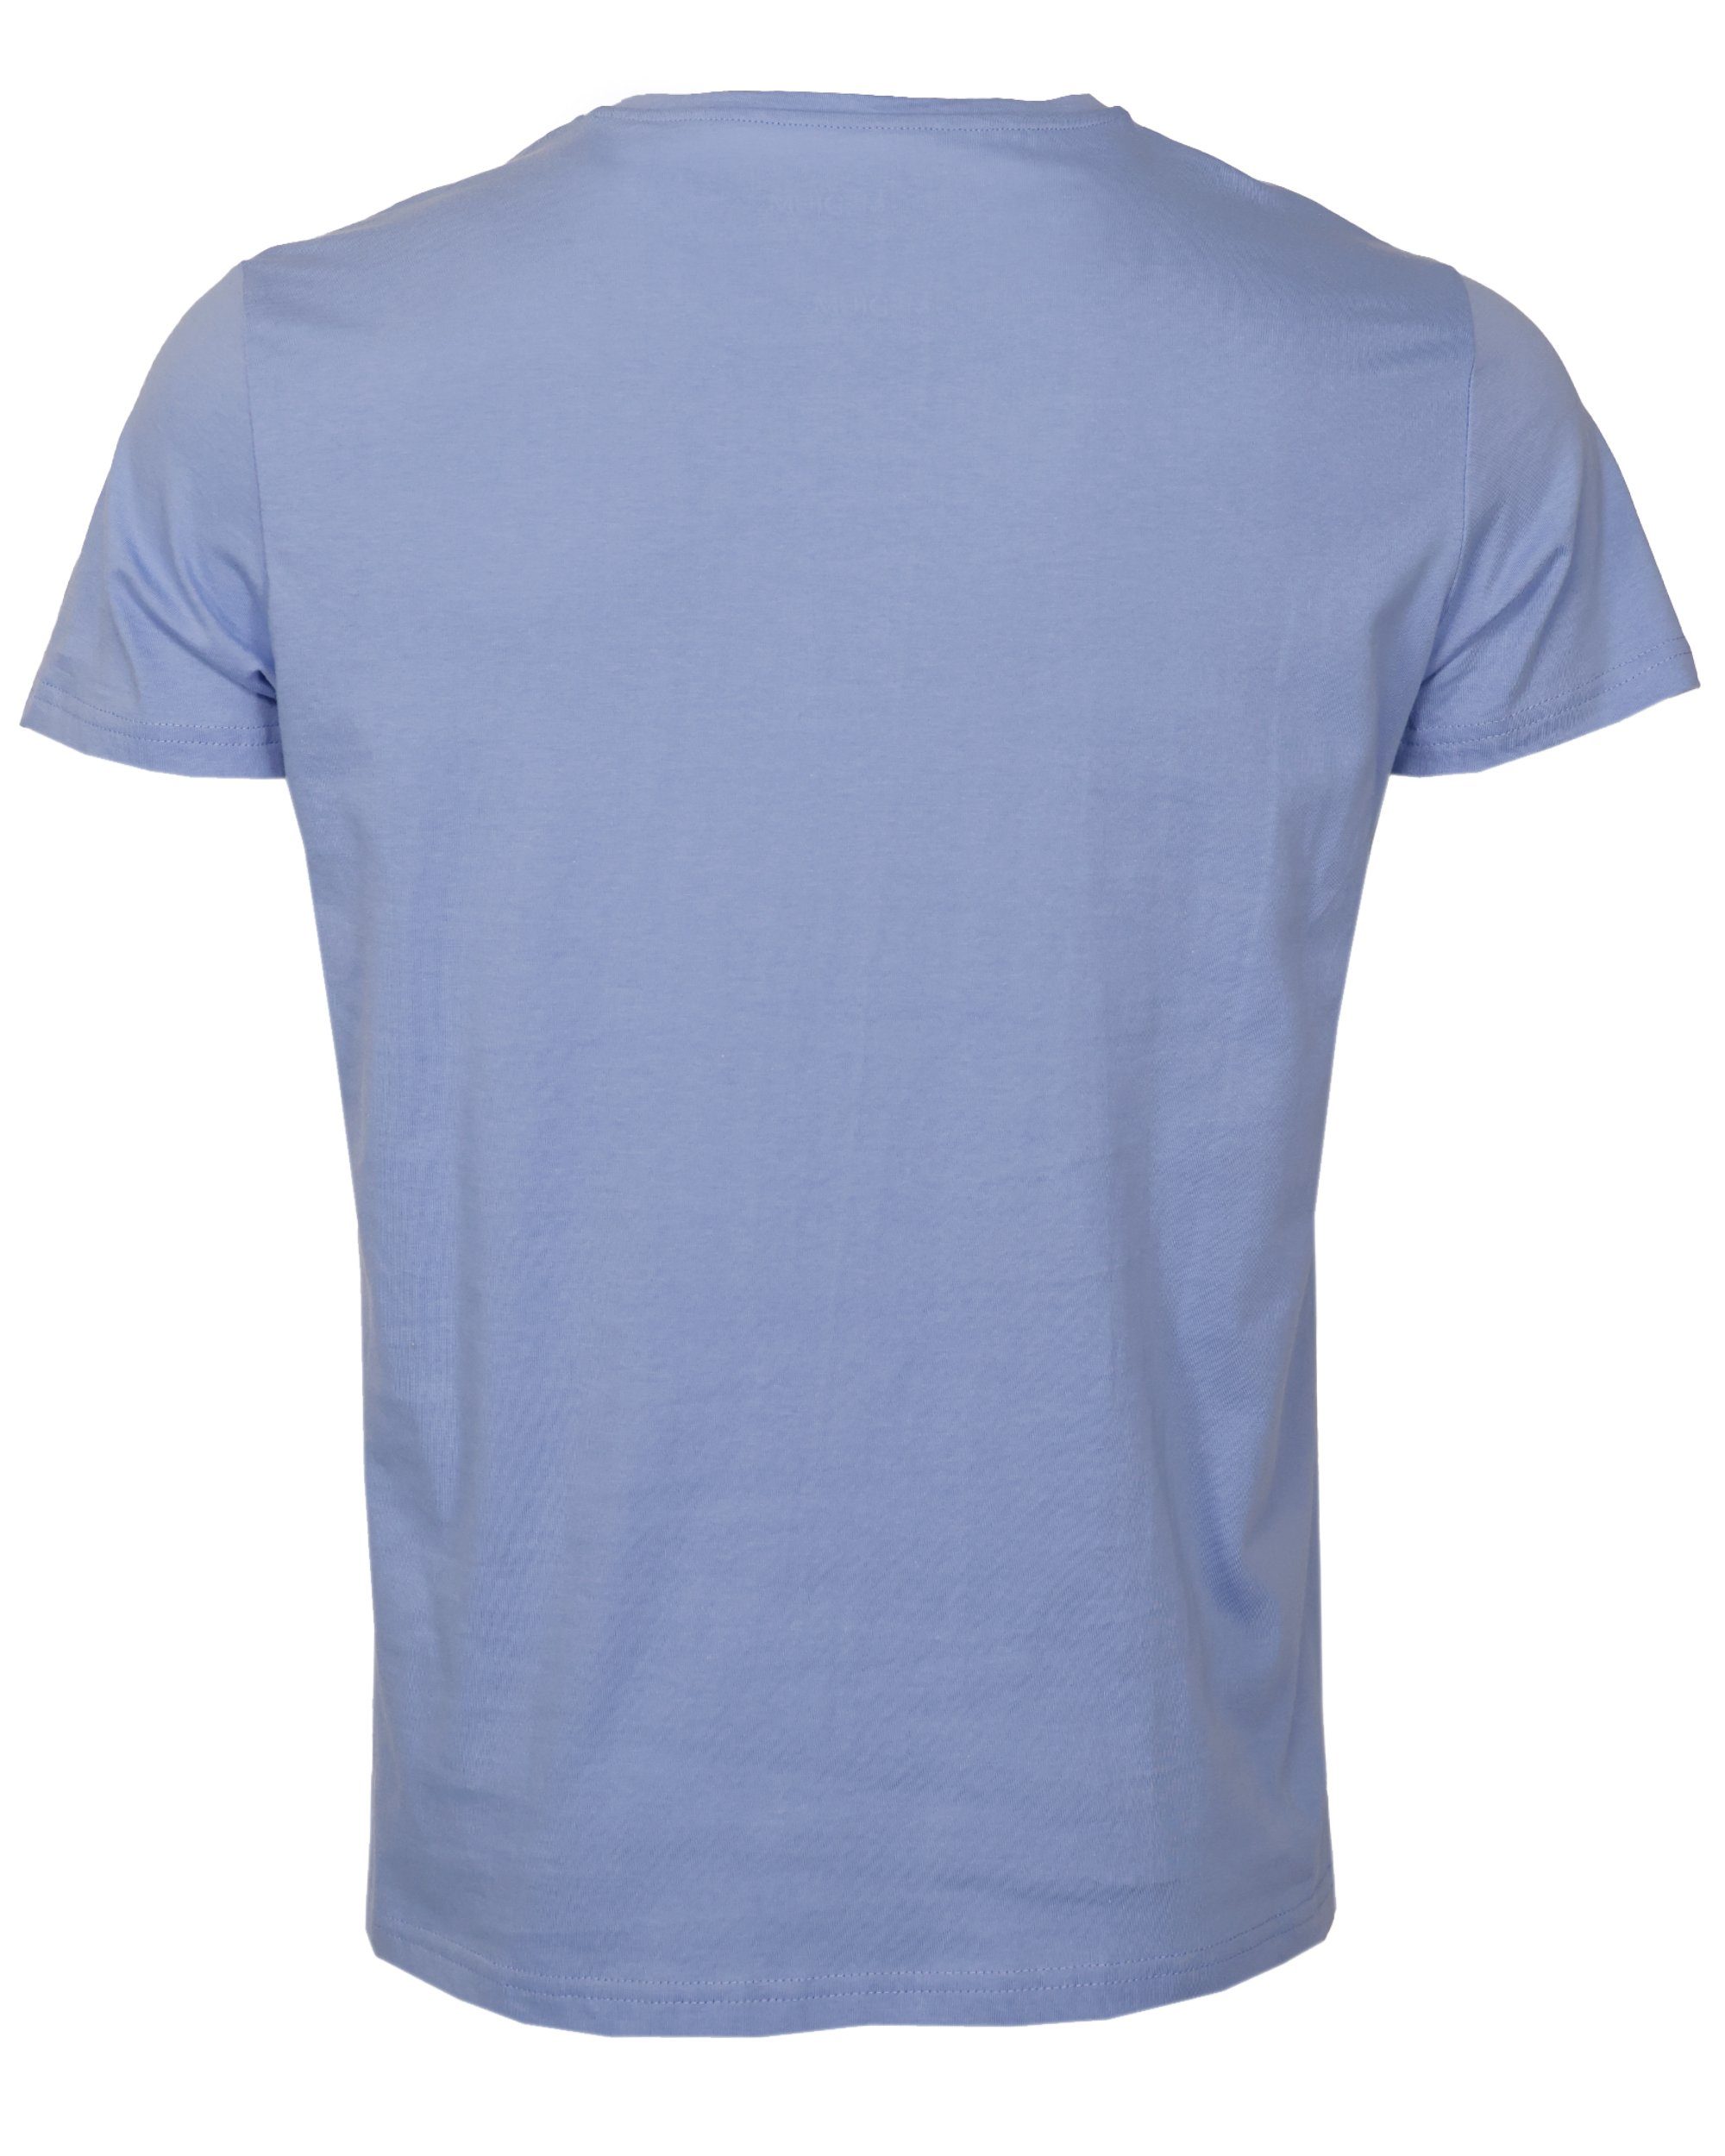 TOP GUN T-Shirt light blue TG20213036